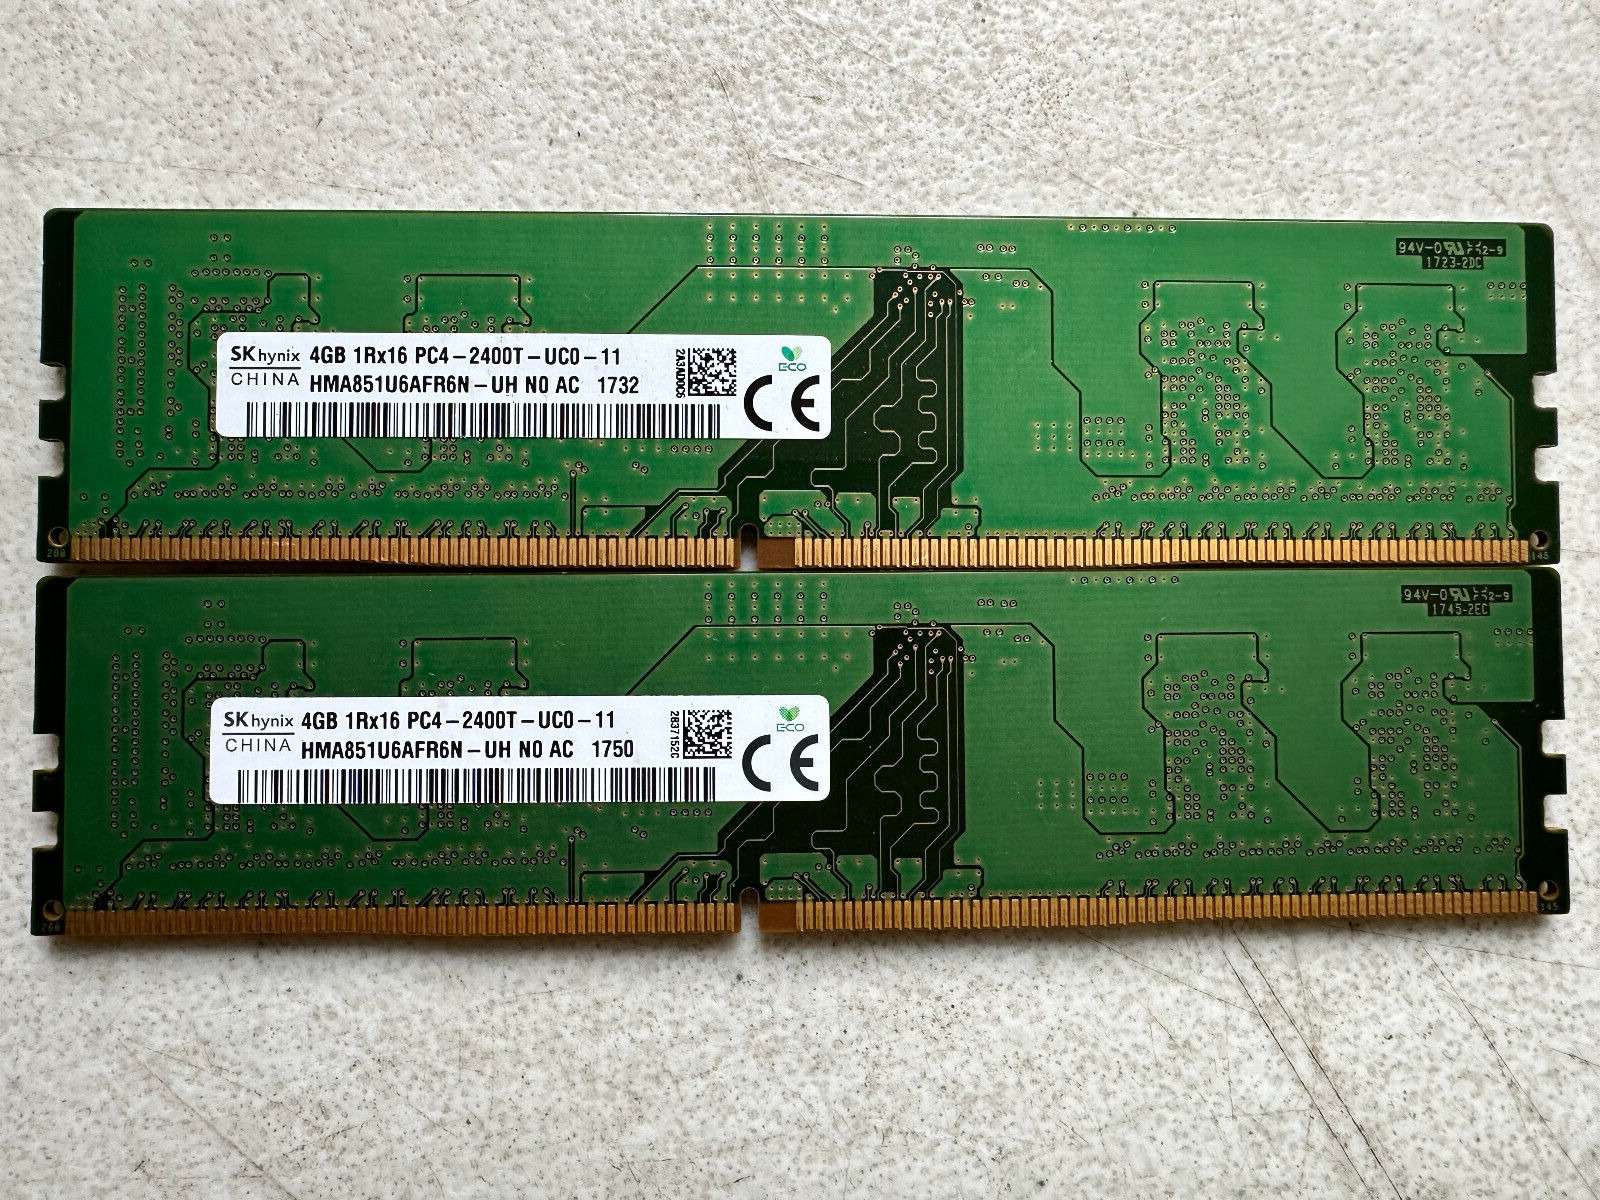 SK hynix 4GB 1Rx16 PC4-2400T | HMA851U6AFR6N | 8GB Total (Lot of 2)